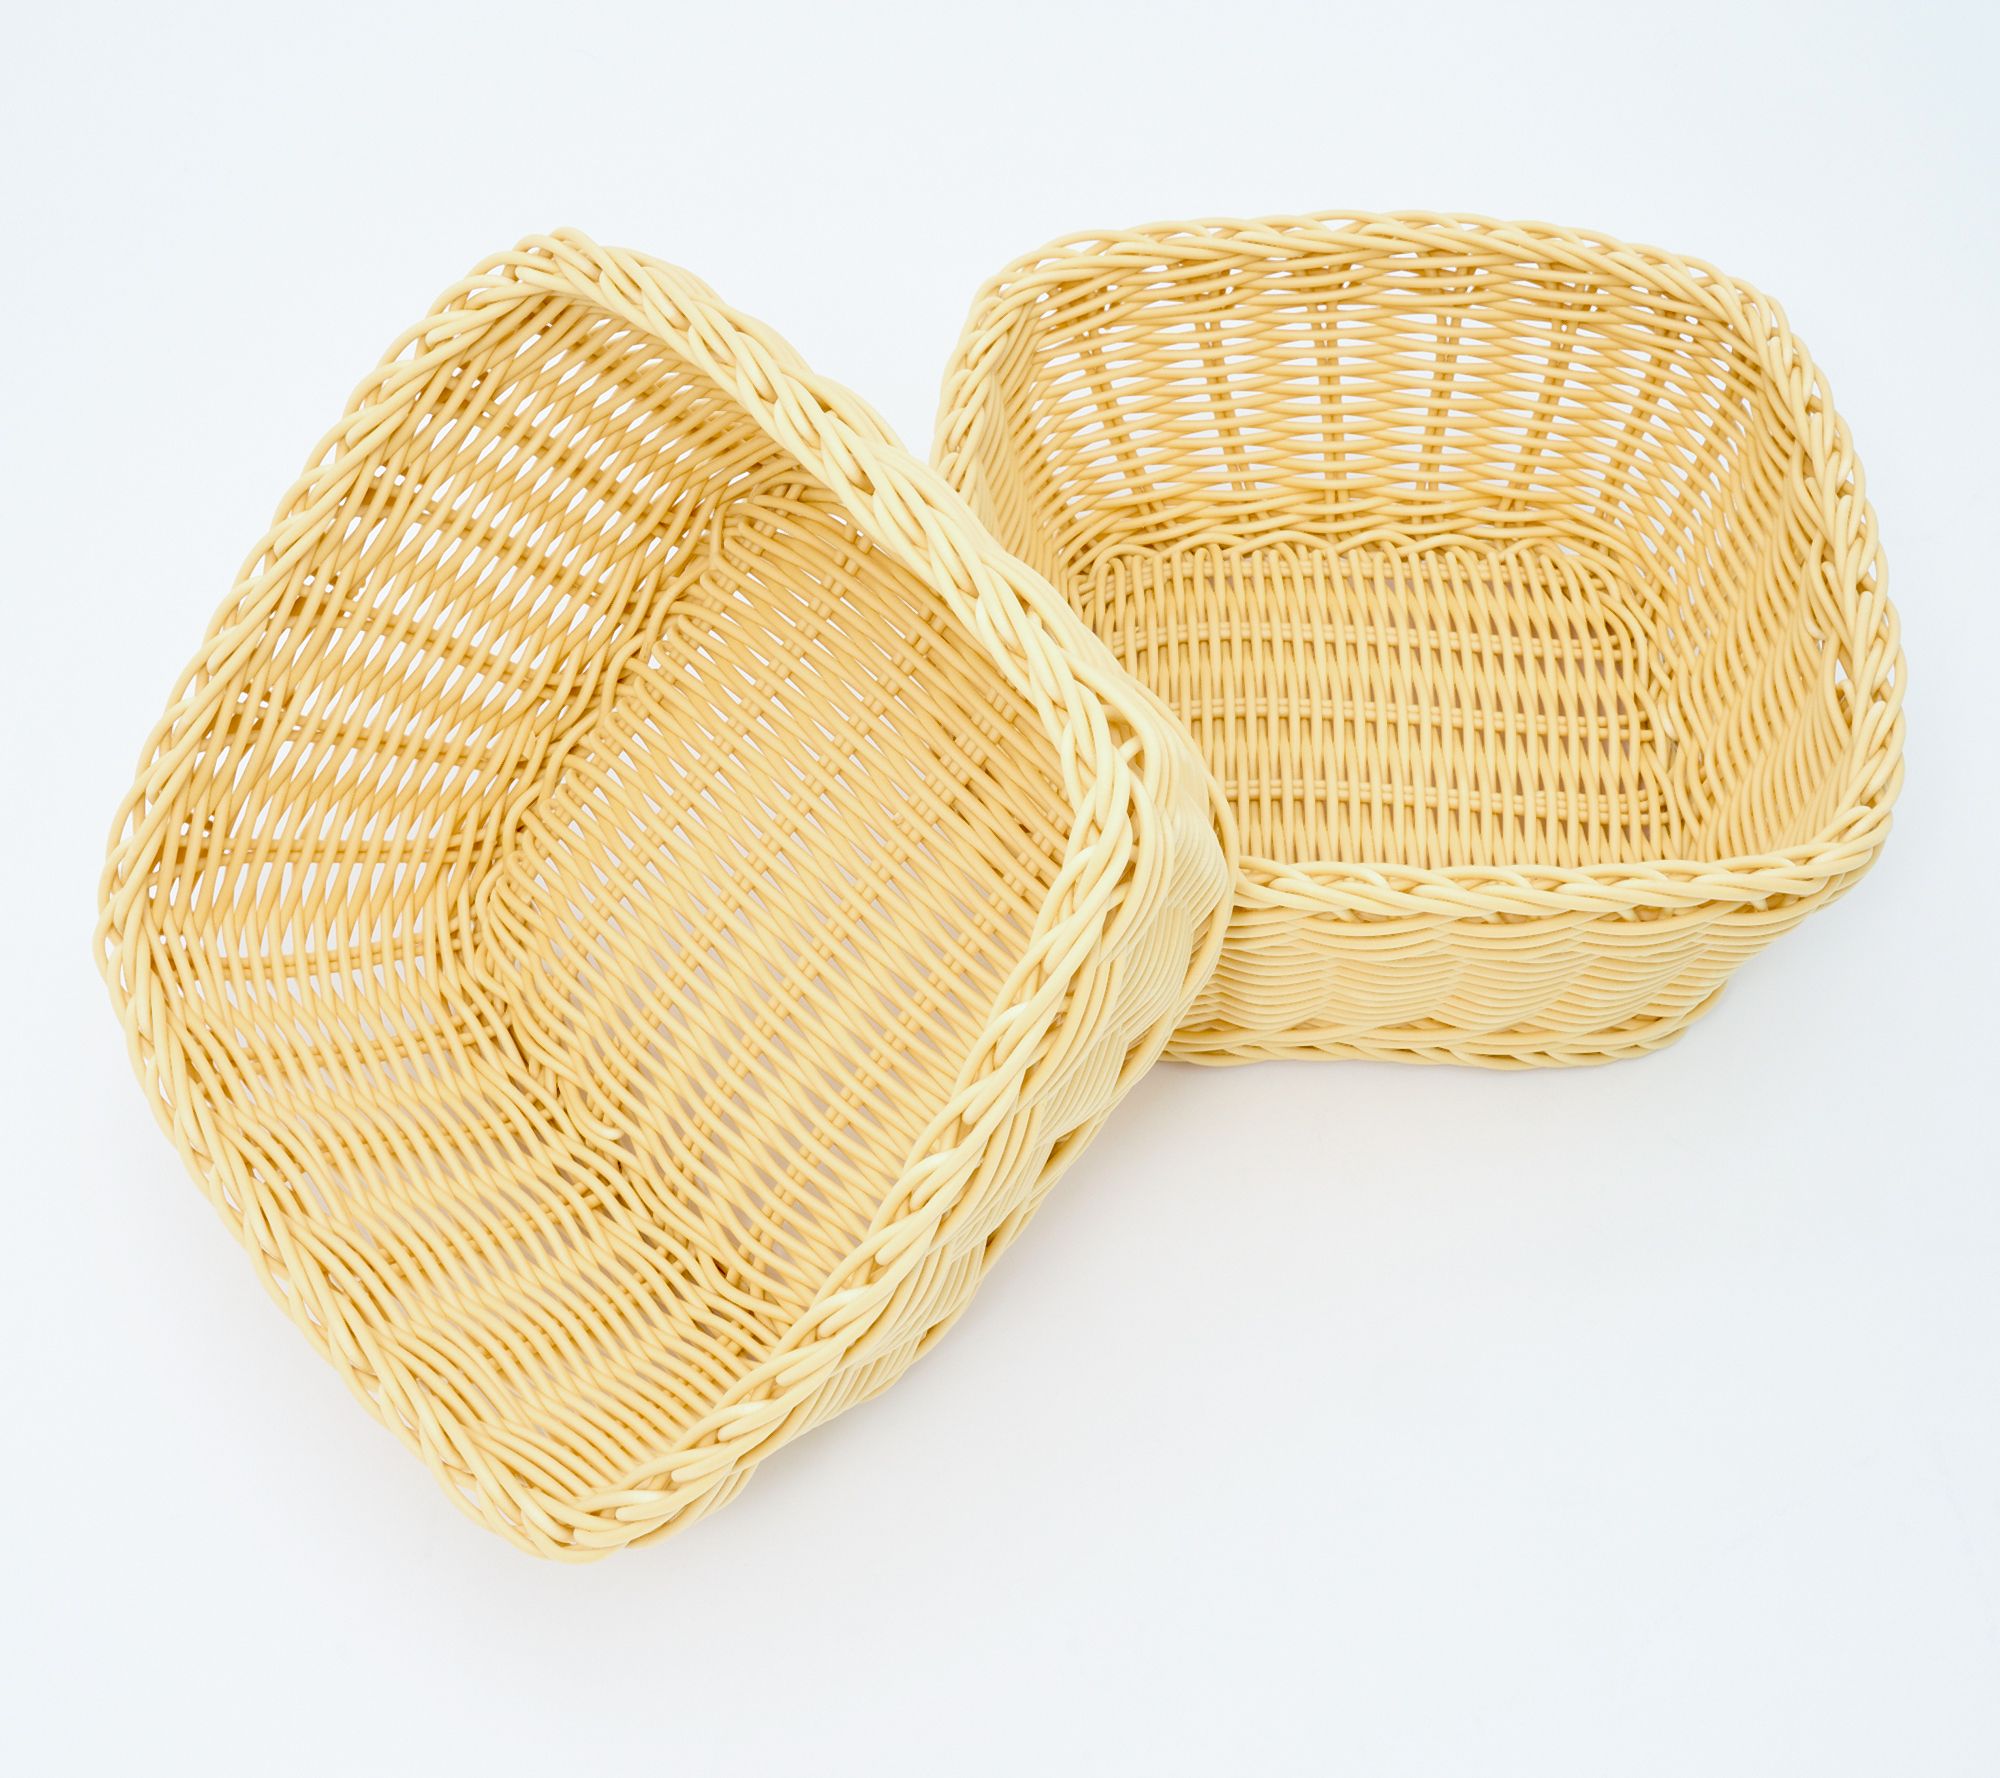 Dishwasher-Safe Plastic Baskets - Set of 2